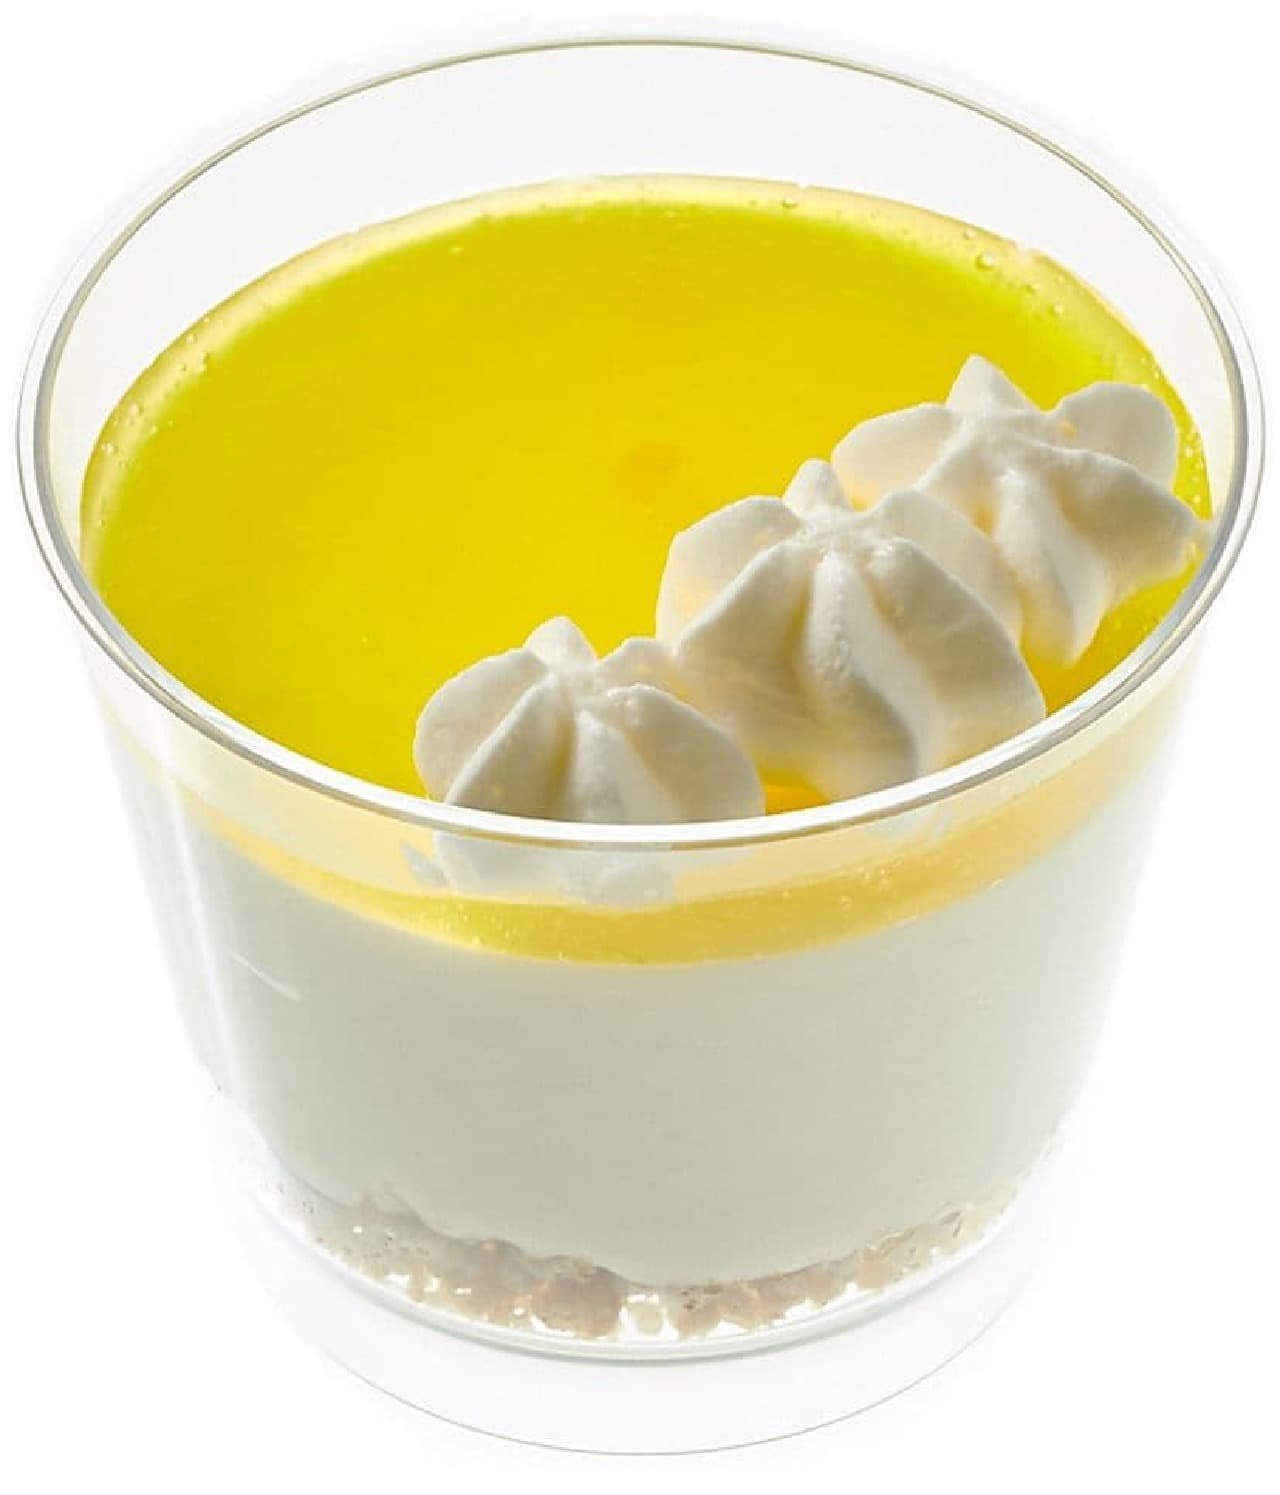 7-ELEVEN "Honey Lemon Fromage with Setouchi Lemons